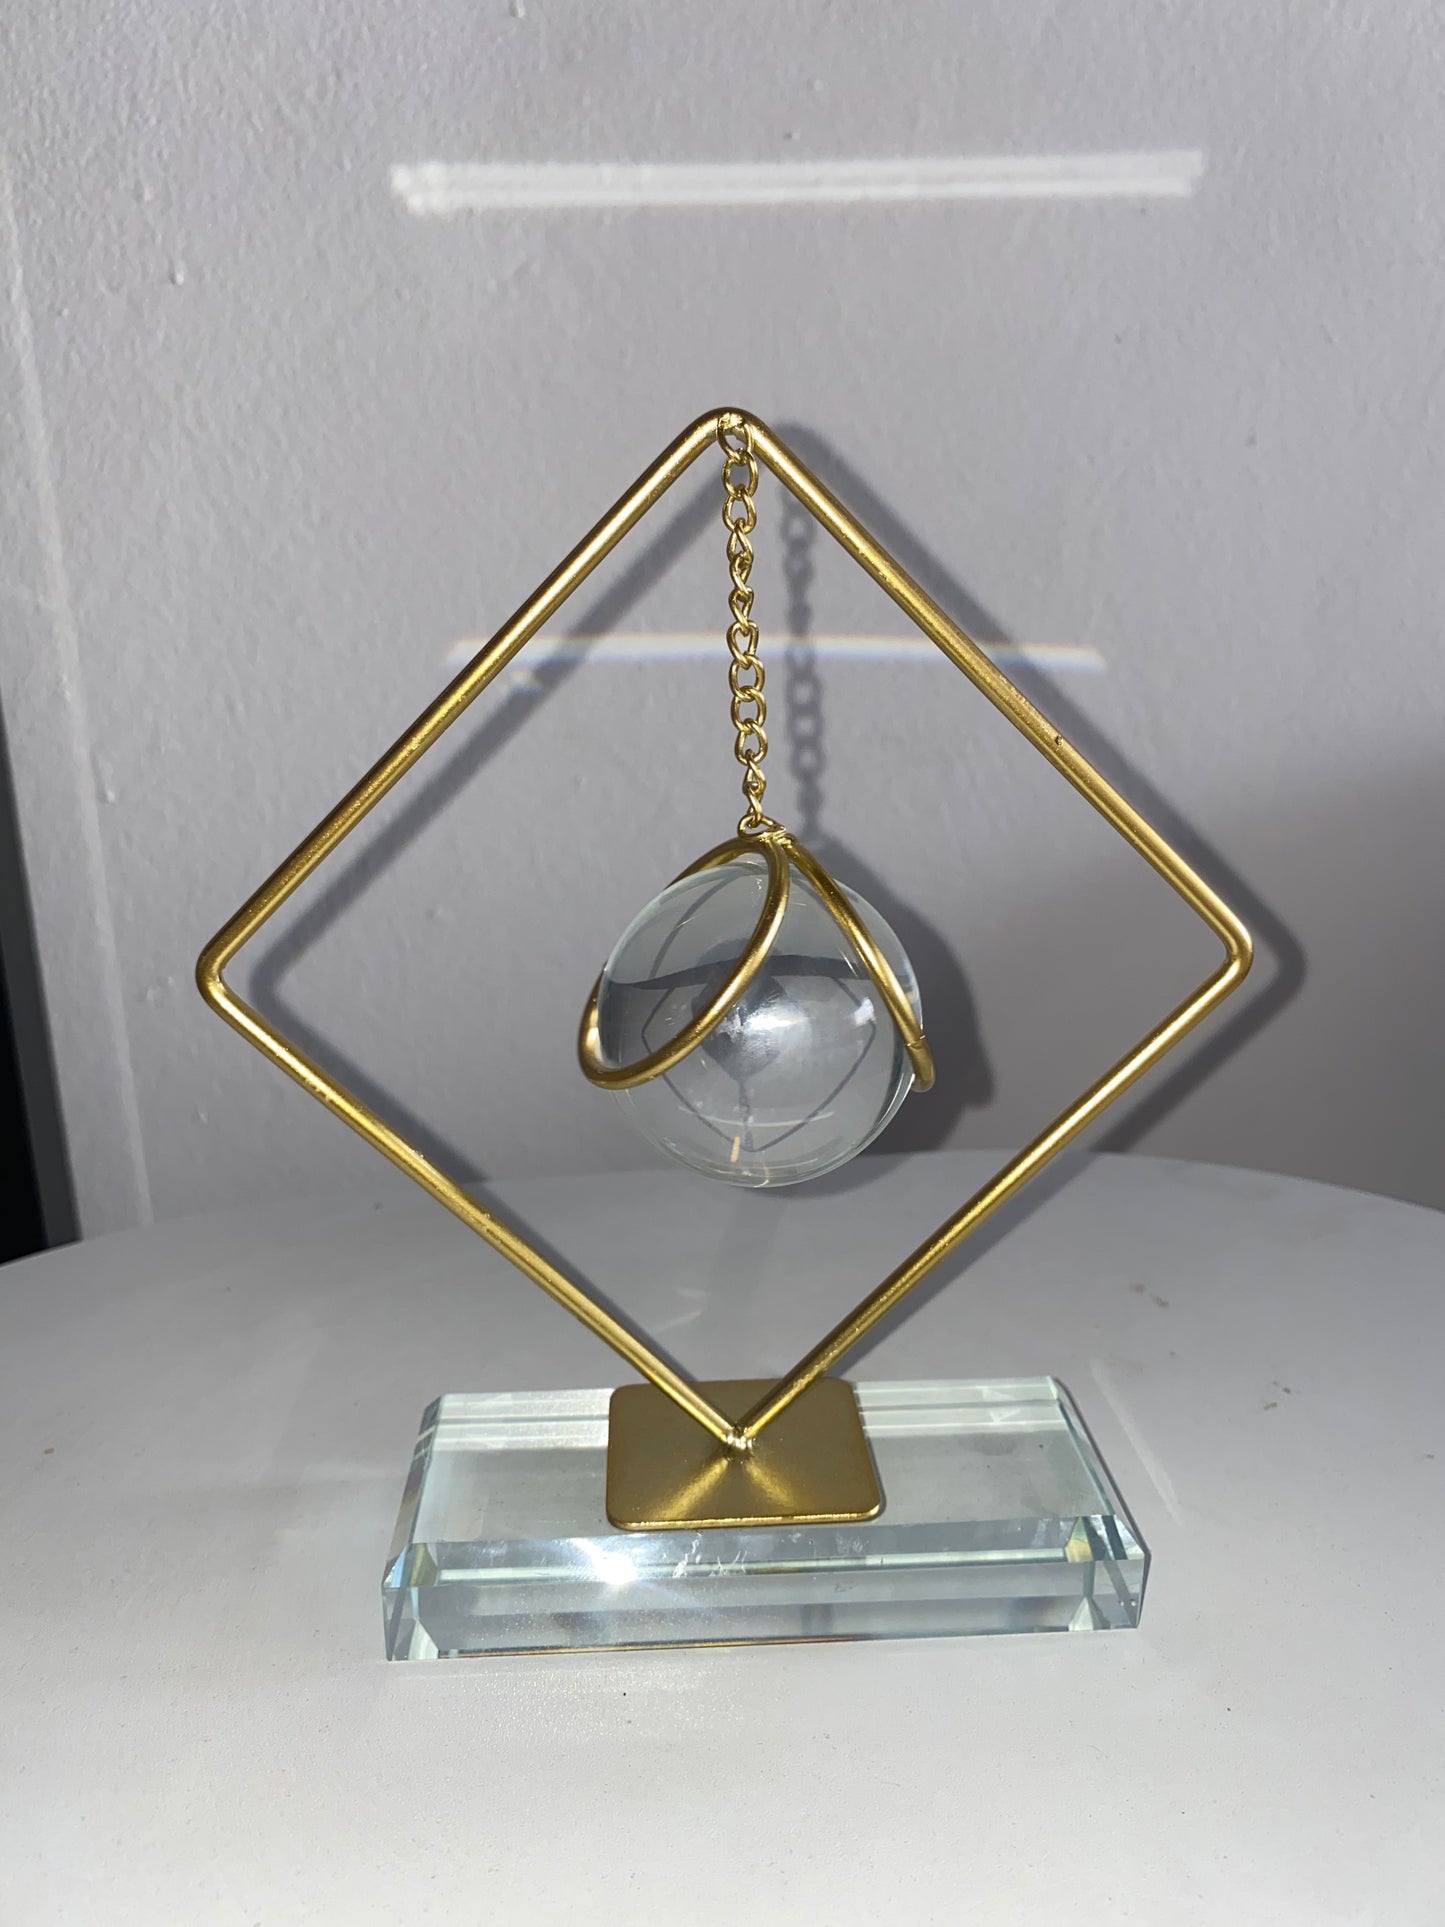 Boule de cristal décorative en métal doré (base), pièce maîtresse